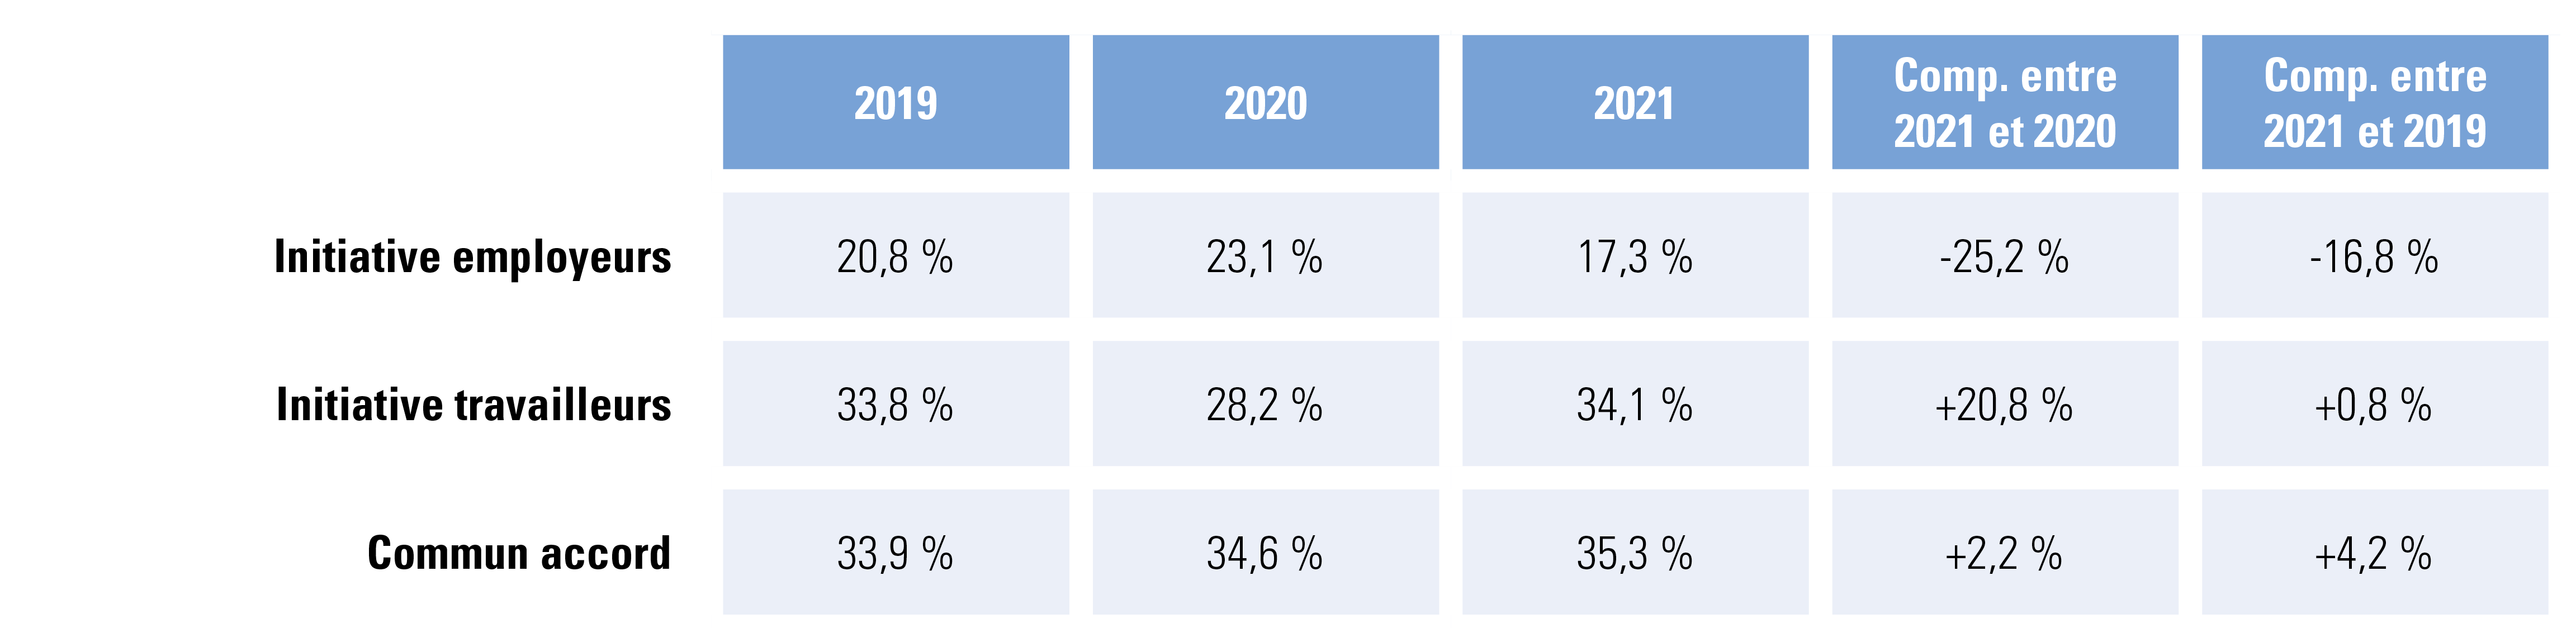 Contrats à durée indéterminée, évolution : 2021 par rapport à 2020 et à 2019